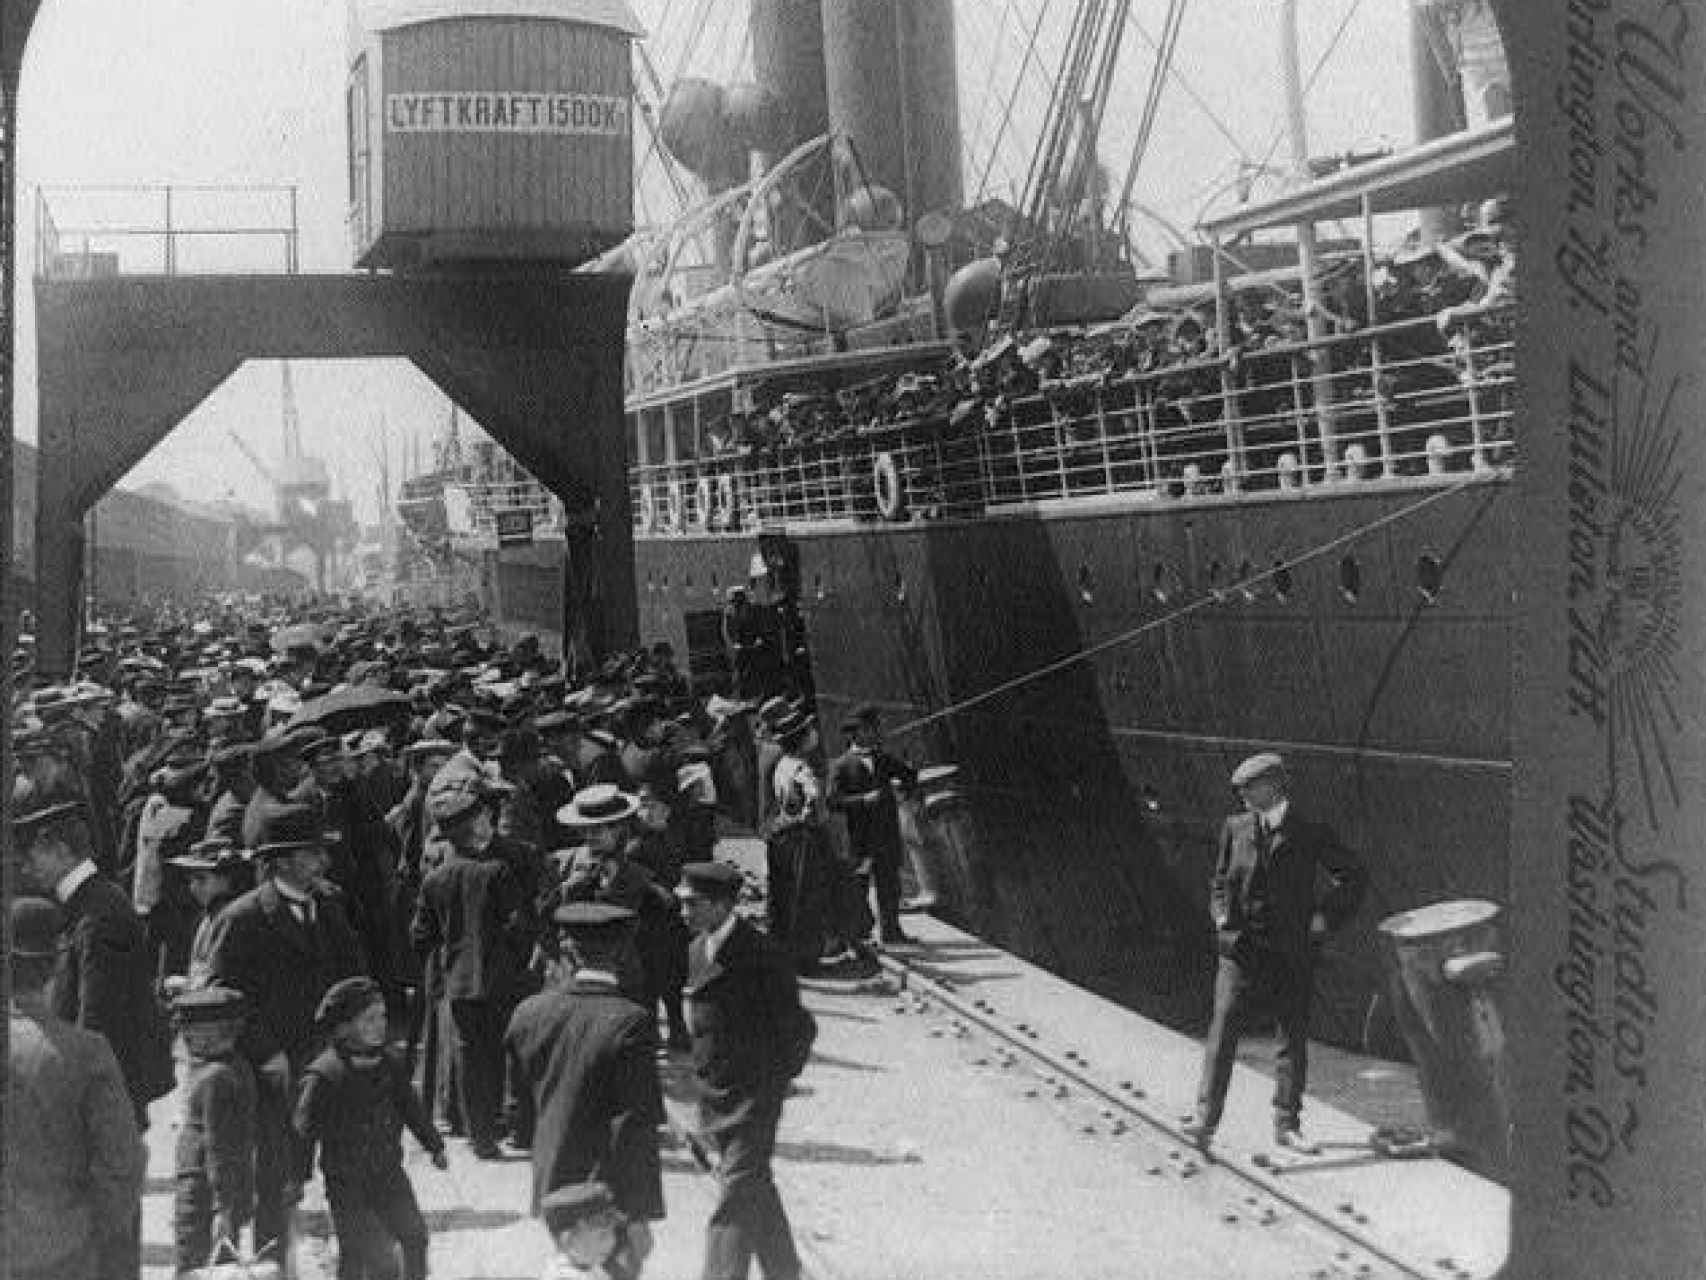 Emigrantes suecos embarcando en Gotemburgo, en 1905, con destino a los Estados Unidos.